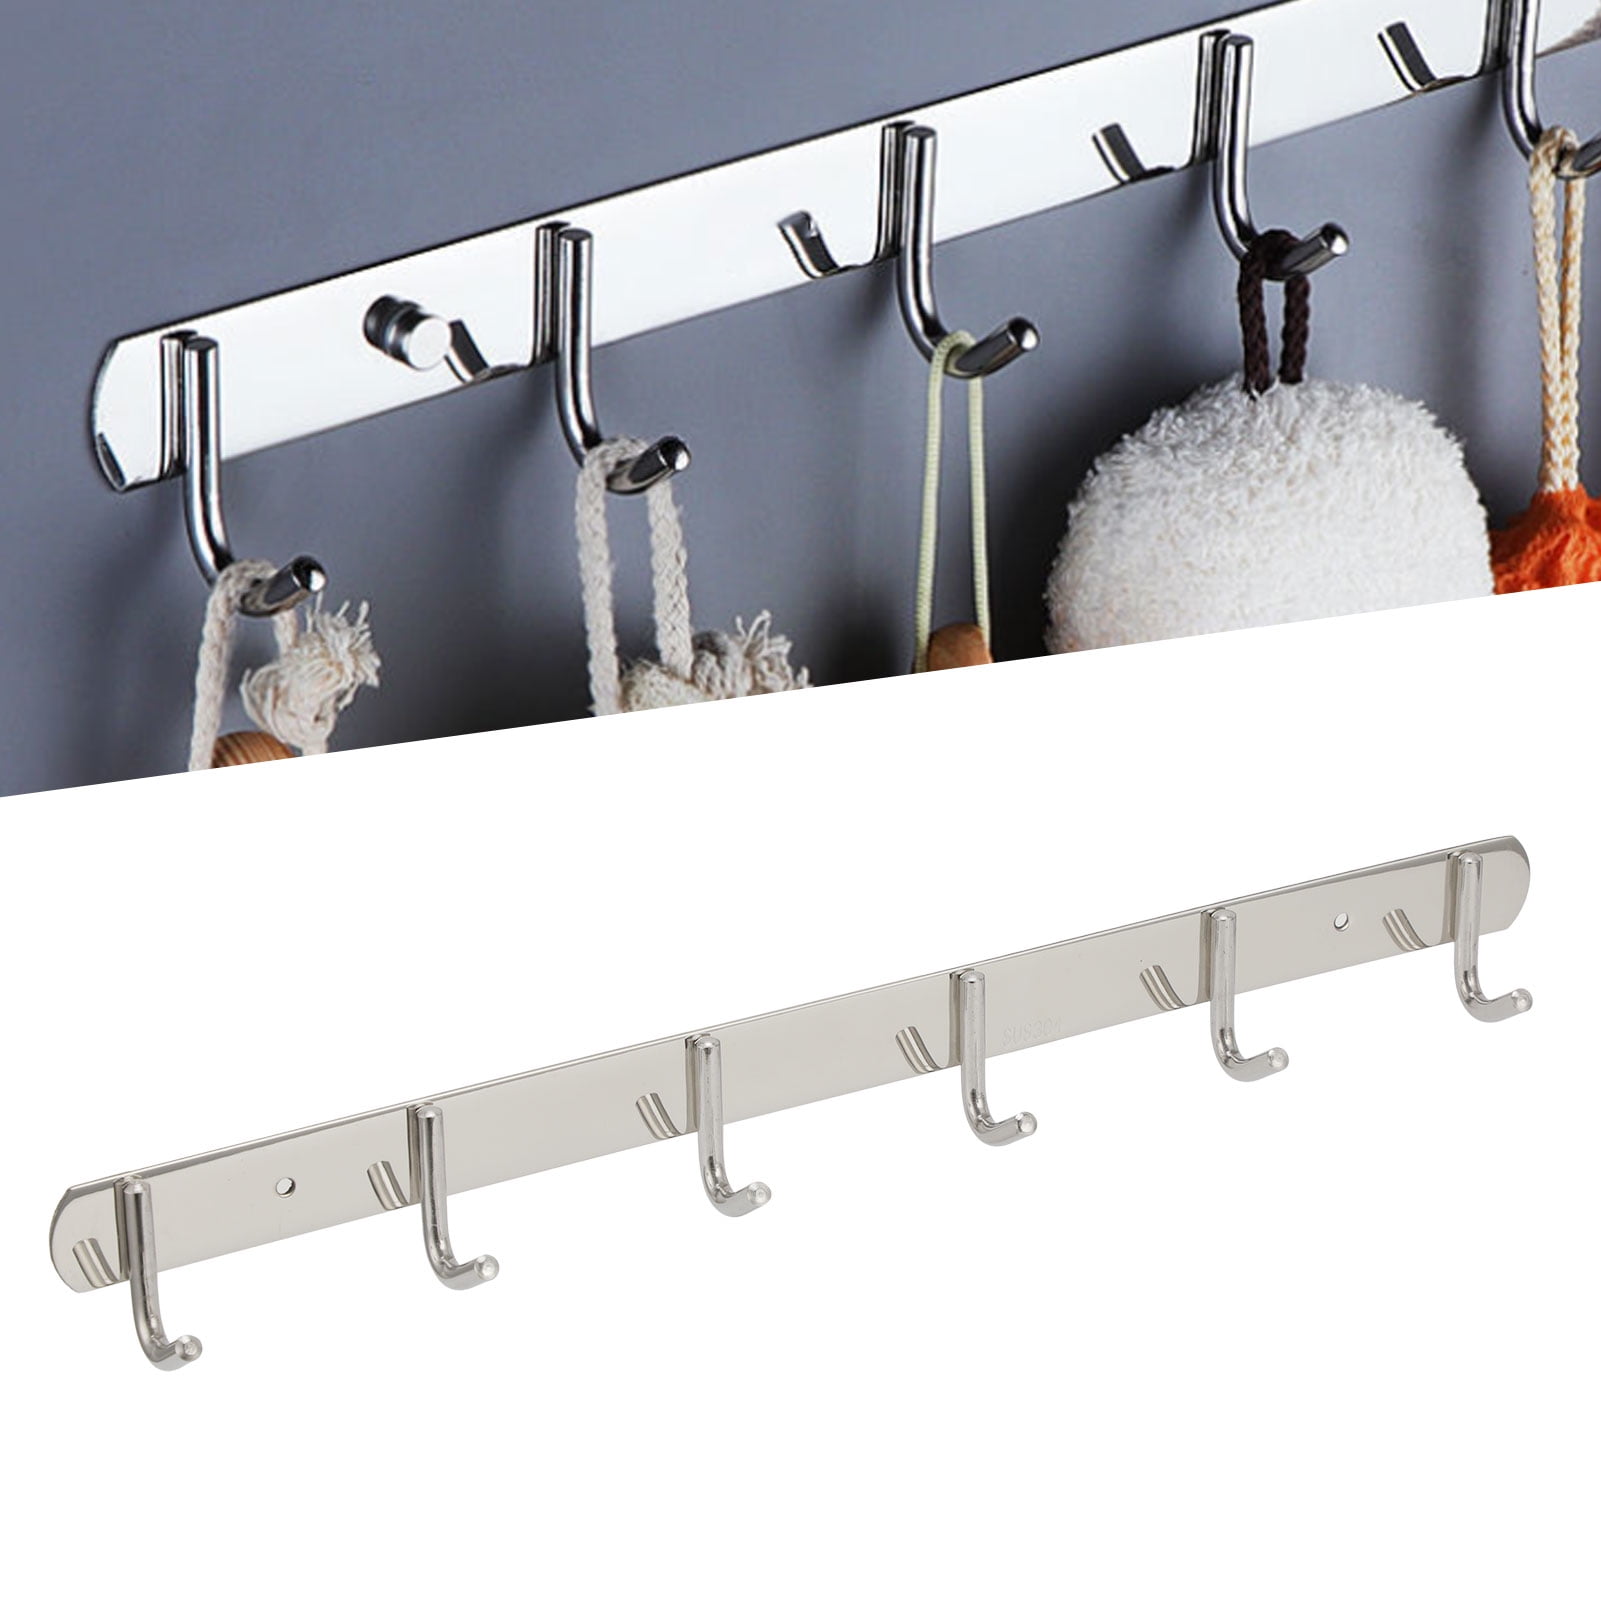 Traceless Removable Storage Rack Wall Hook Key Holder Kitchen Hooks Door Hanger